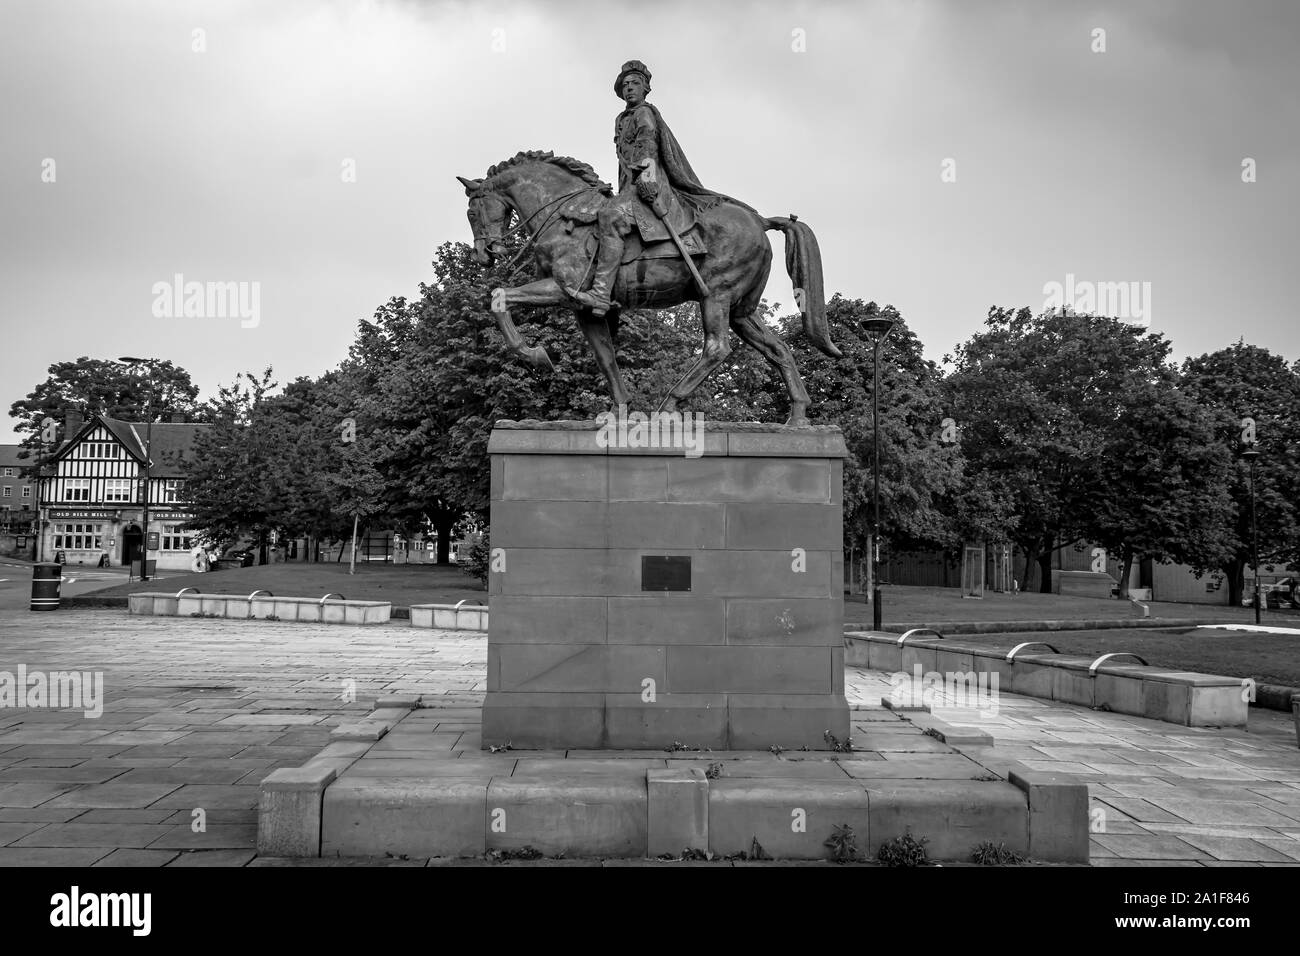 Statue en bronze coulé de Bonnie Prince Charlie à cheval portant redingote et épée,cheval a une jambe levée,Vert Cathédrale Derby UK Banque D'Images